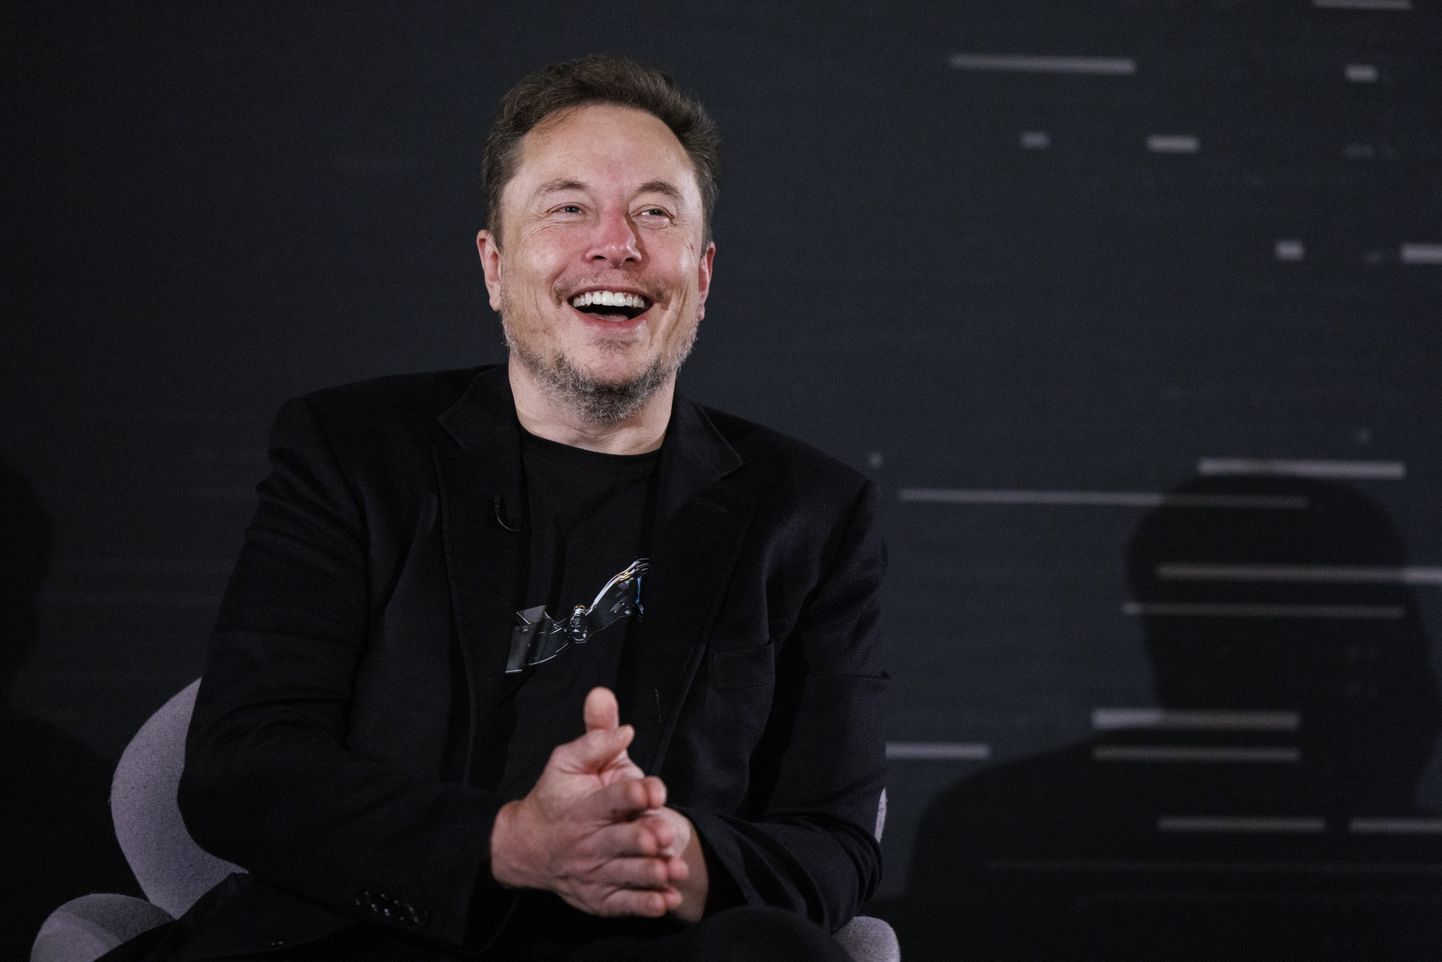 Tehnoloogiaettevõtja Elon Musk, kellele kuuluvad Tesla, SpaceX ja X, osales hiljuti riigijuhtide kohtumisel, kus arutati tehisintellekti arengu reguleerimist. Vaid mõni päev hiljem tõi Musk välja oma tehisintellekti, mis olevat parem ja vabam kui teised.